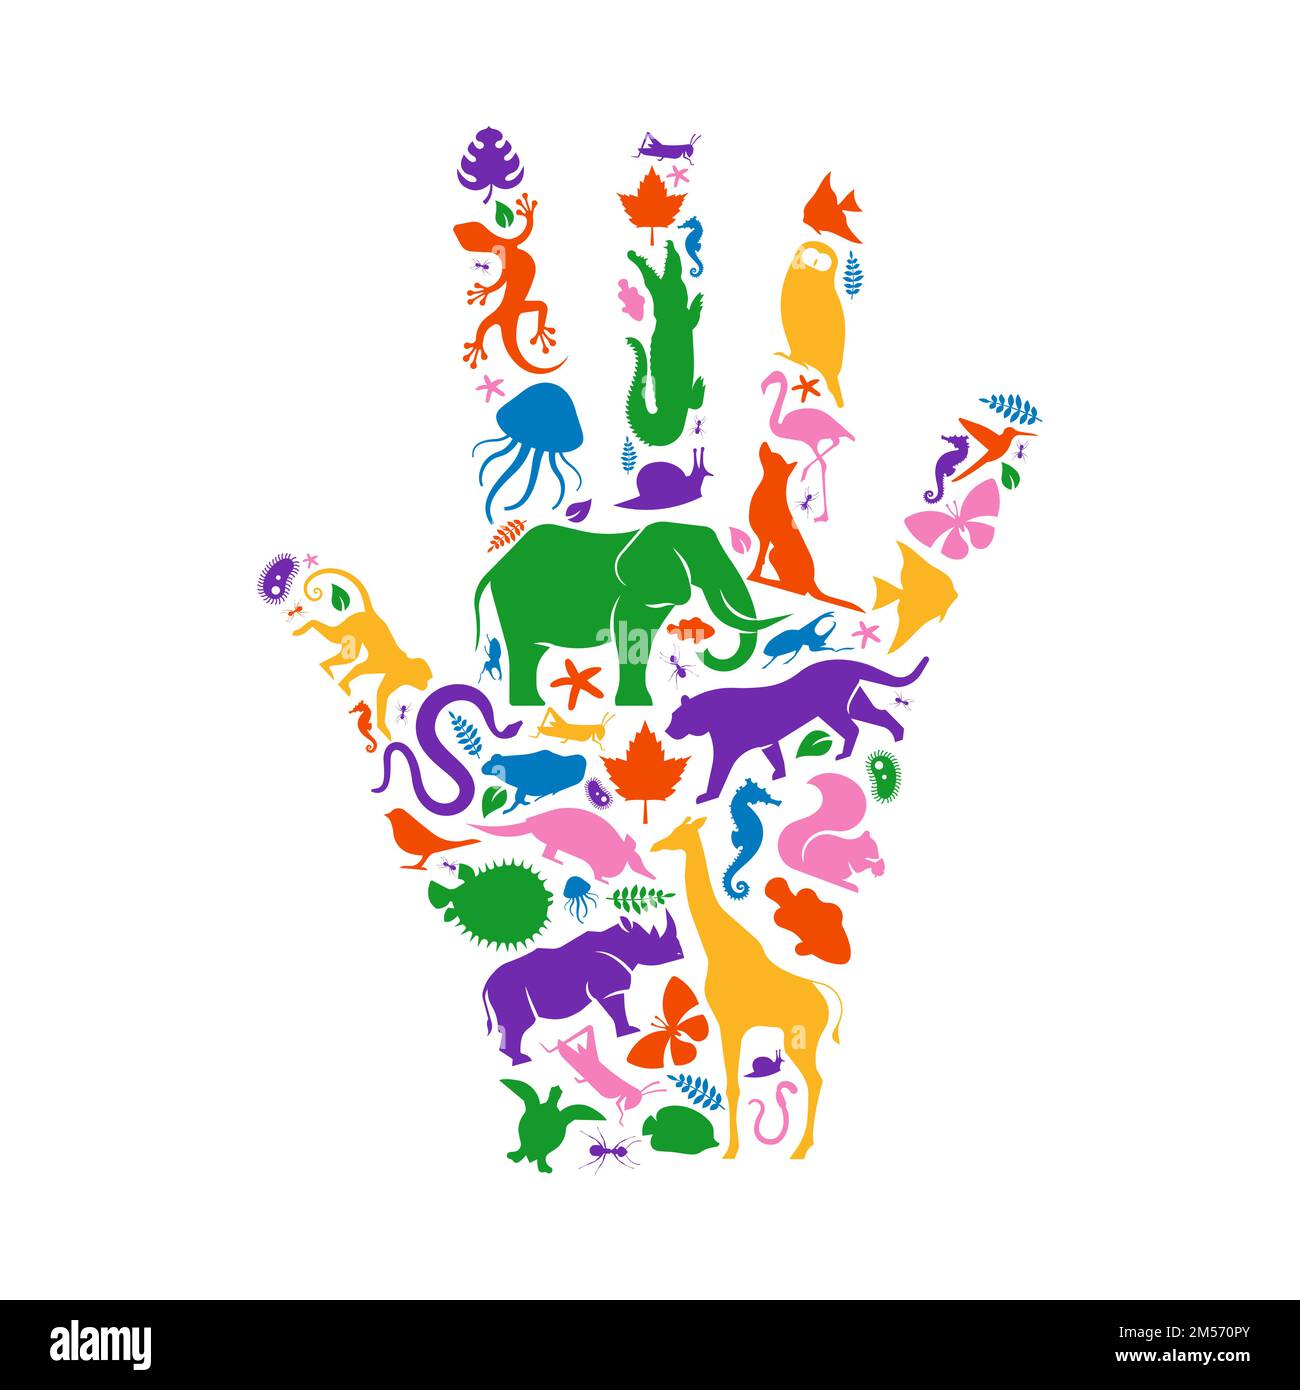 Diverses formes animales qui donnent la forme à la main humaine sur un fond blanc isolé. Illustration de la silhouette d'animaux colorés pour la biodiversité sauvage concep Illustration de Vecteur